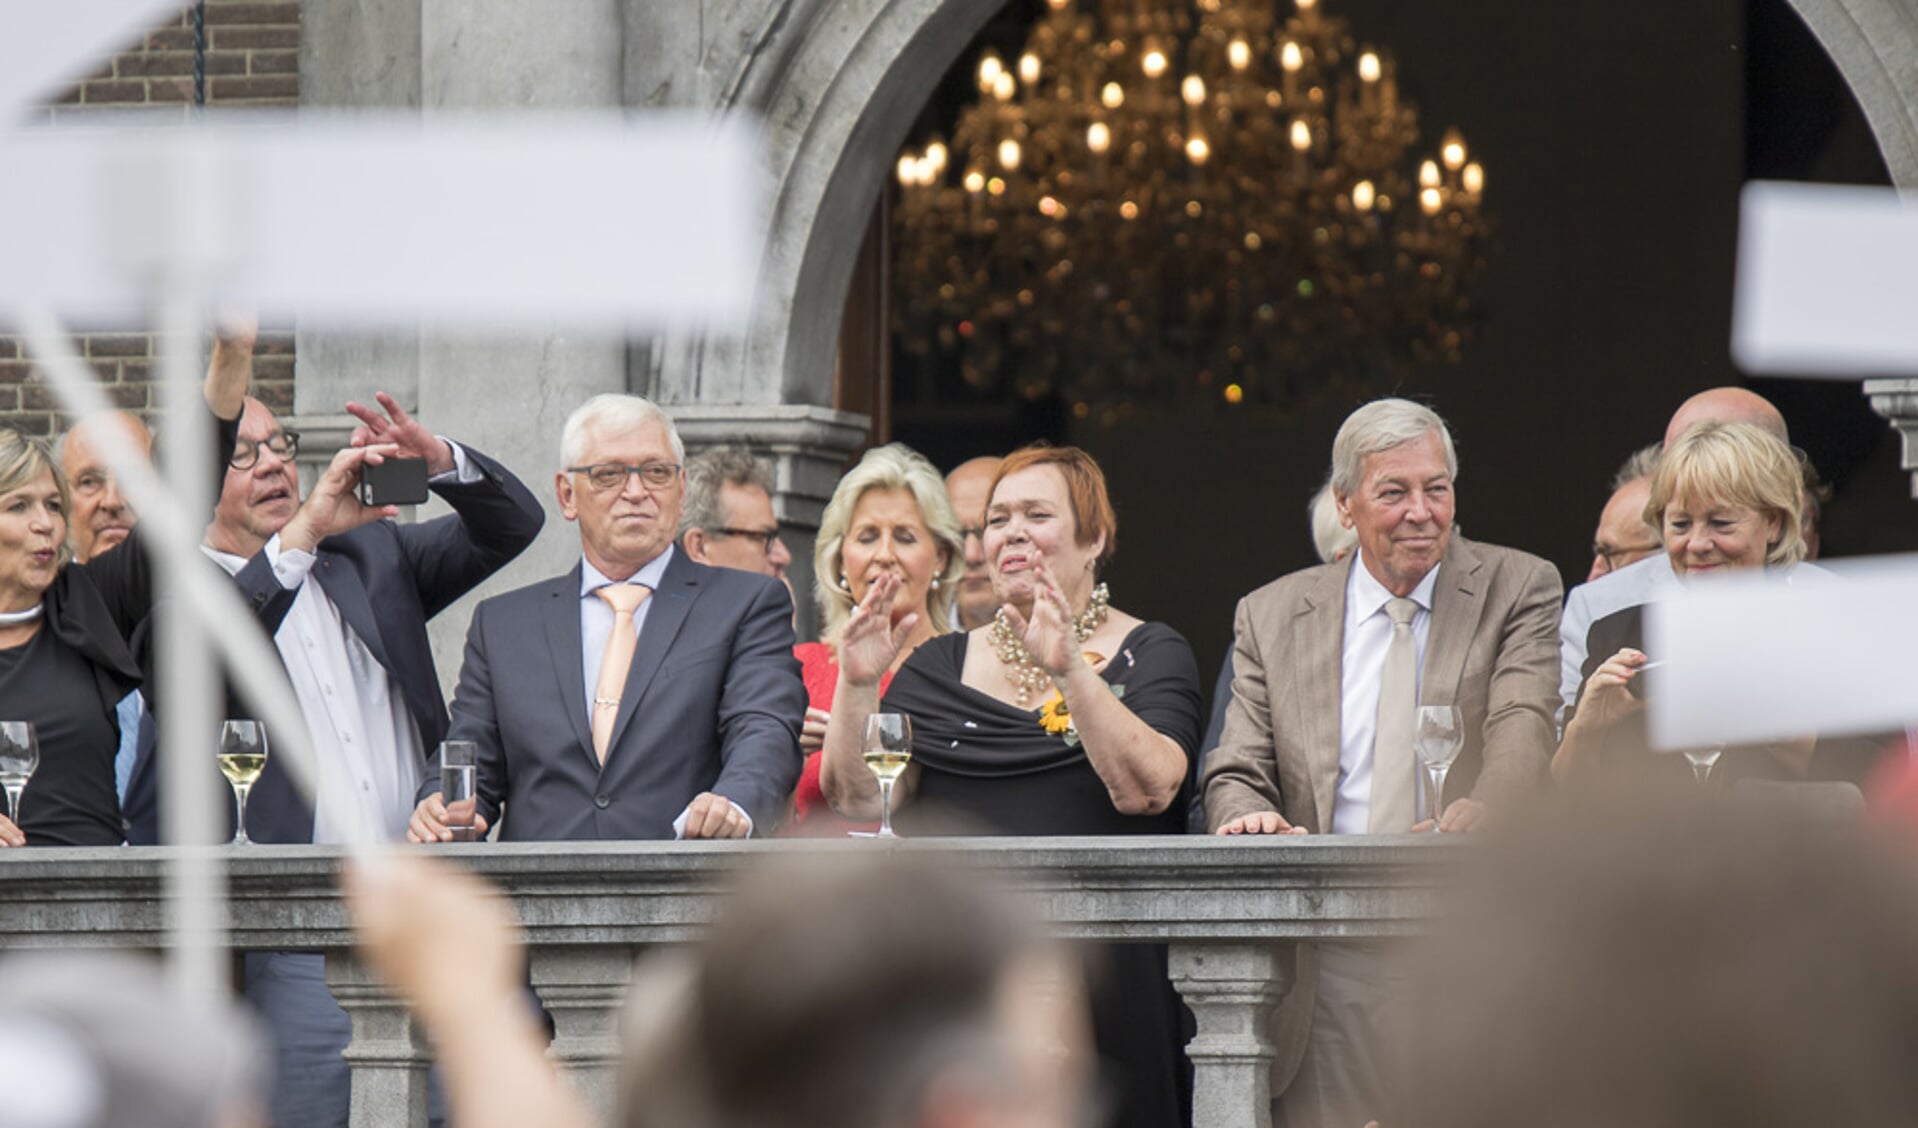 VVV-directeur Marlice Dreessen werd na haar afscheidsreceptie verrast met een parade van Bredase evenementen.